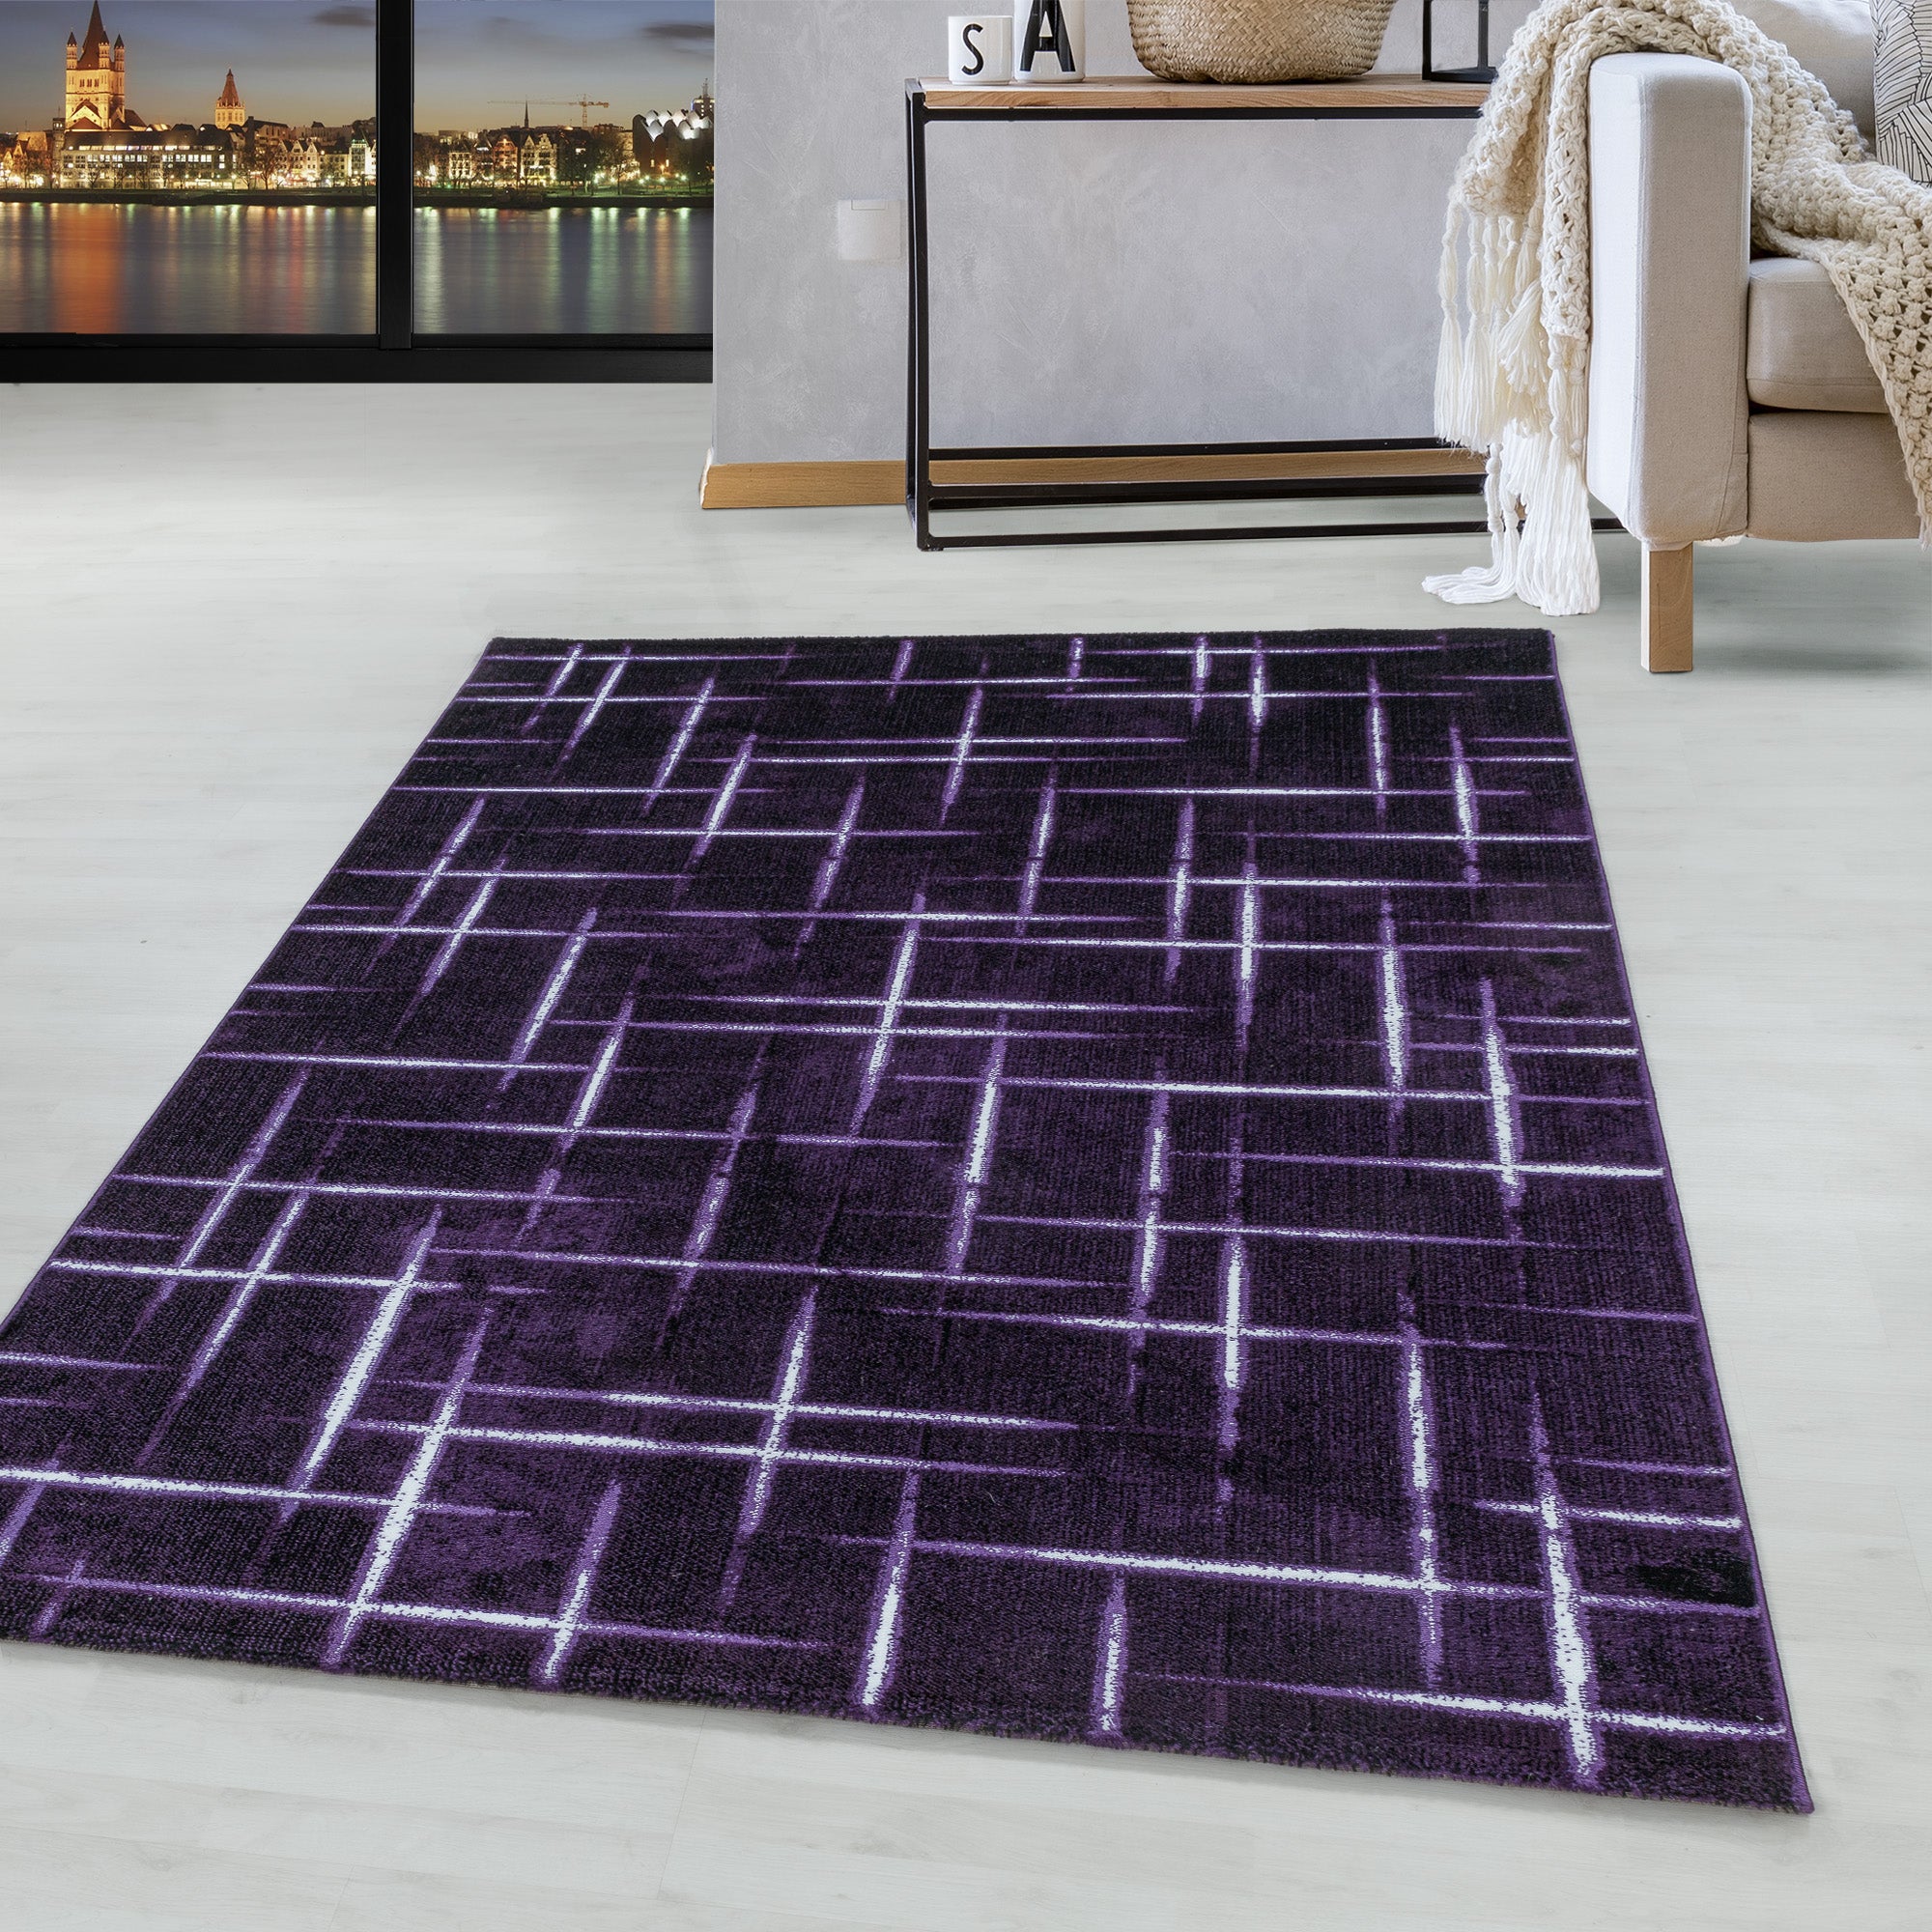 Kurzflor Design Teppich Wohnzimmerteppich Gitter Muster Soft Flor Lila